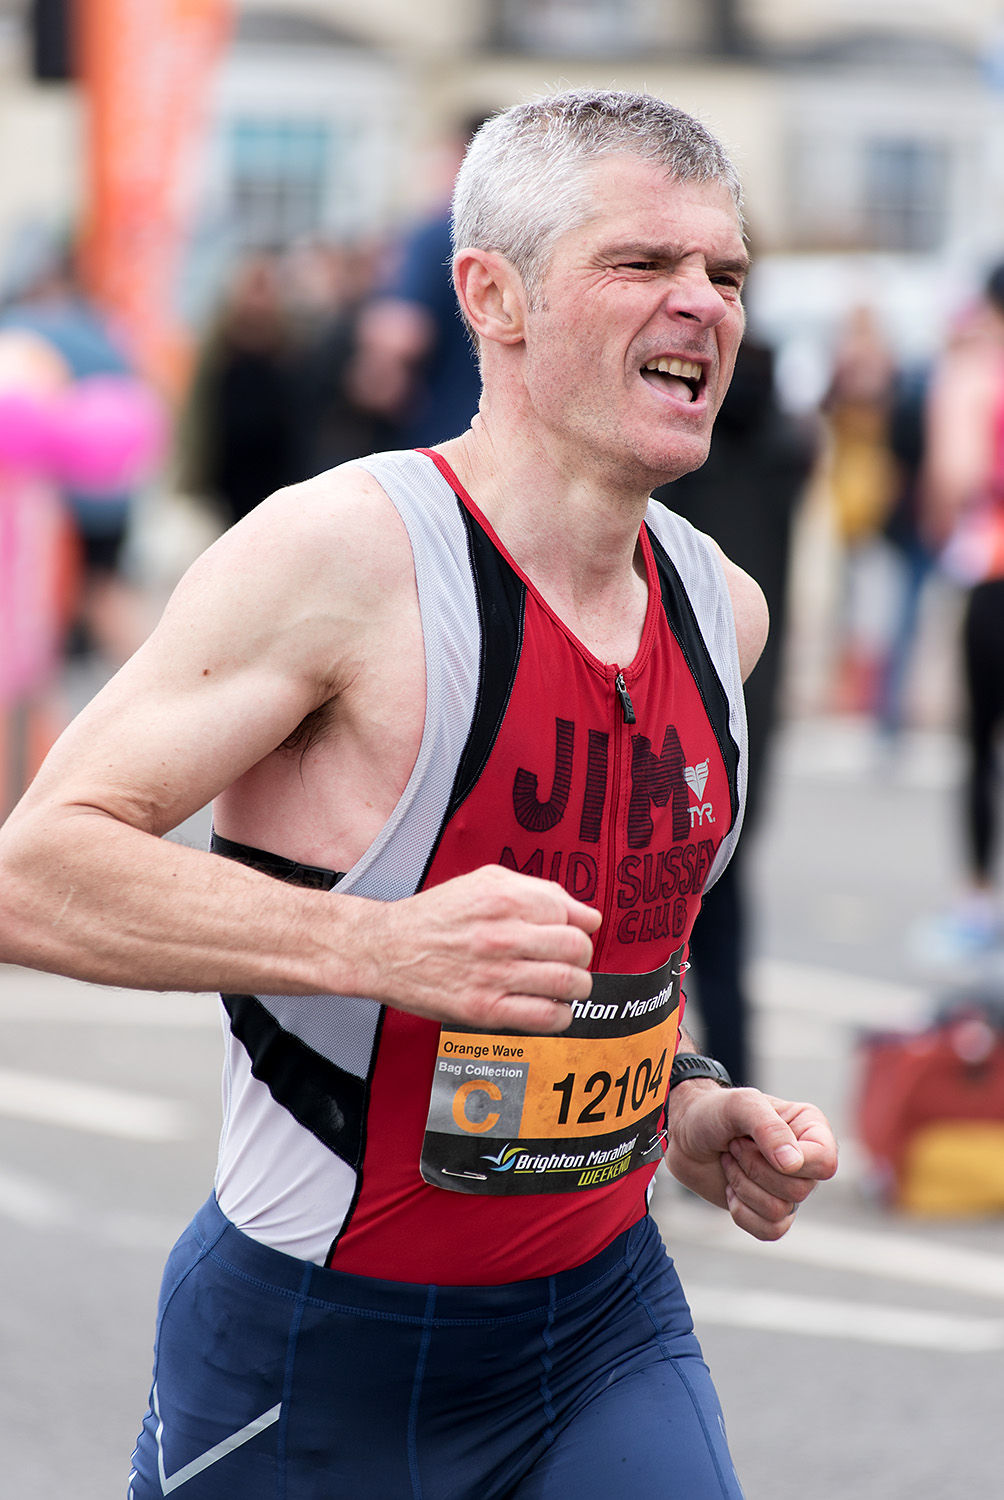  Brighton Marathon 2018 - Mile 25 